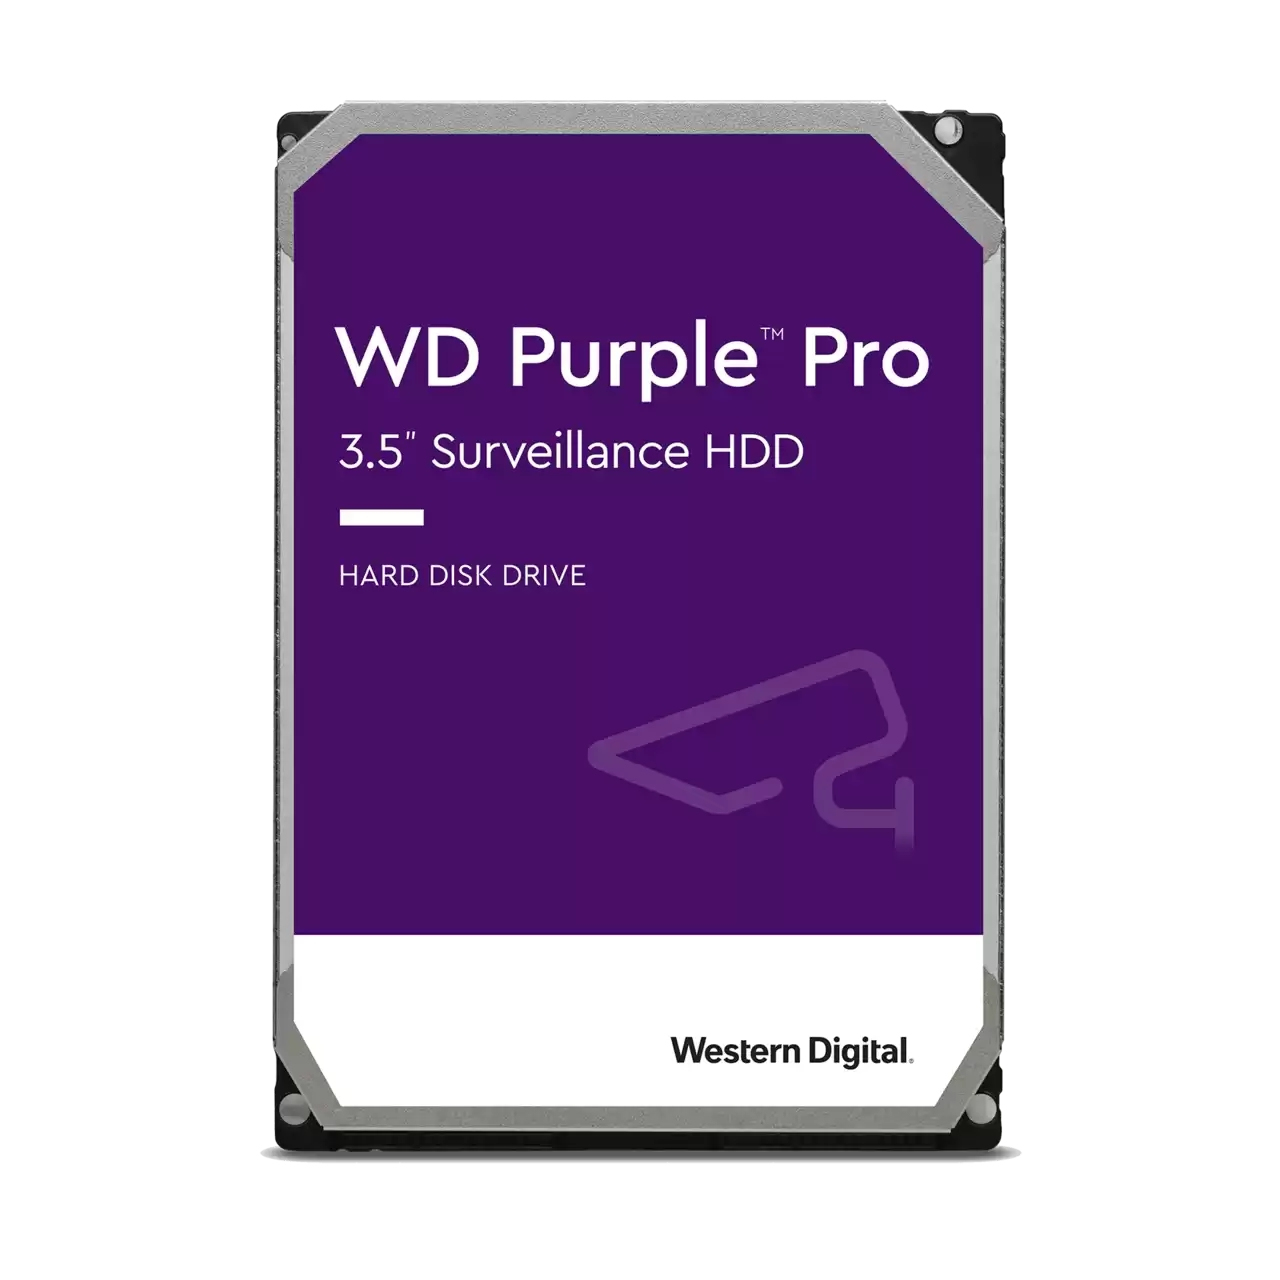 WESTERN DIGITAL WD Purple Pro Hard 3.5, Surveillance - 8 Zoll, HDD, 8 7200rpm, intern Drive TB, WD8001PURP), 3,5 TB (SATA